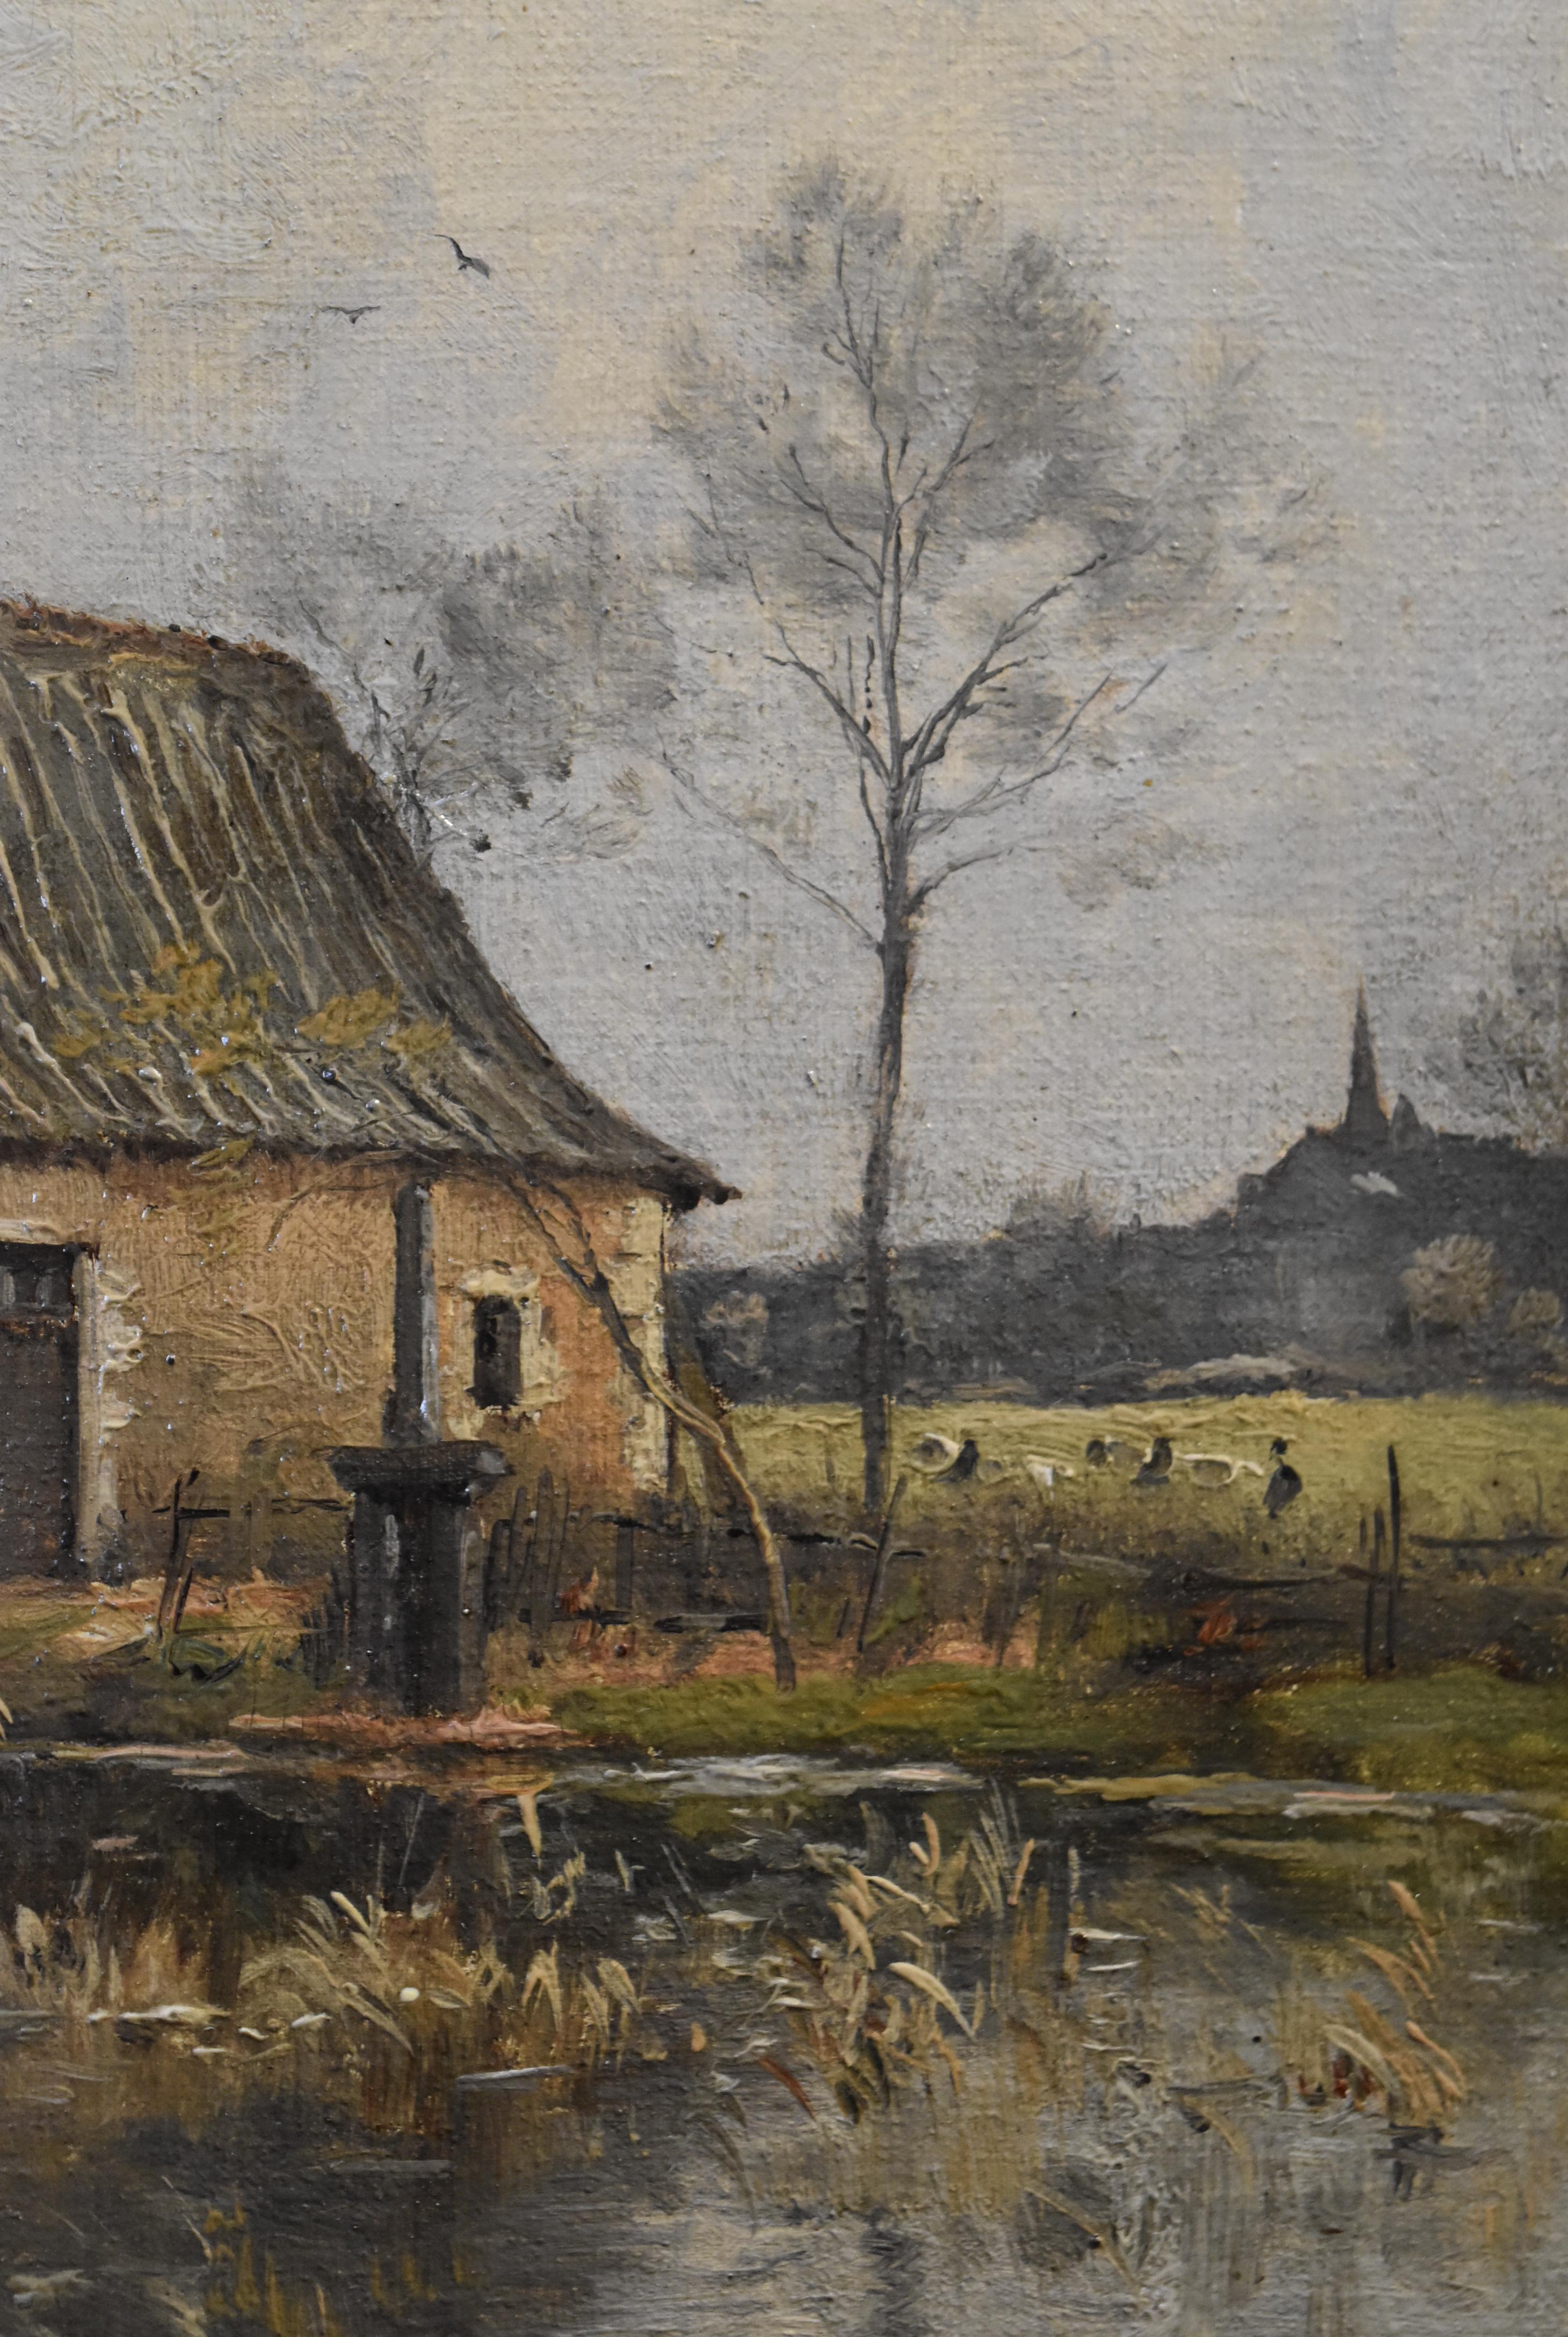 Paul Lecomte (1842-1920) Eine Farm in der Nähe eines Teichs, Öl auf Leinwand, signiert 2